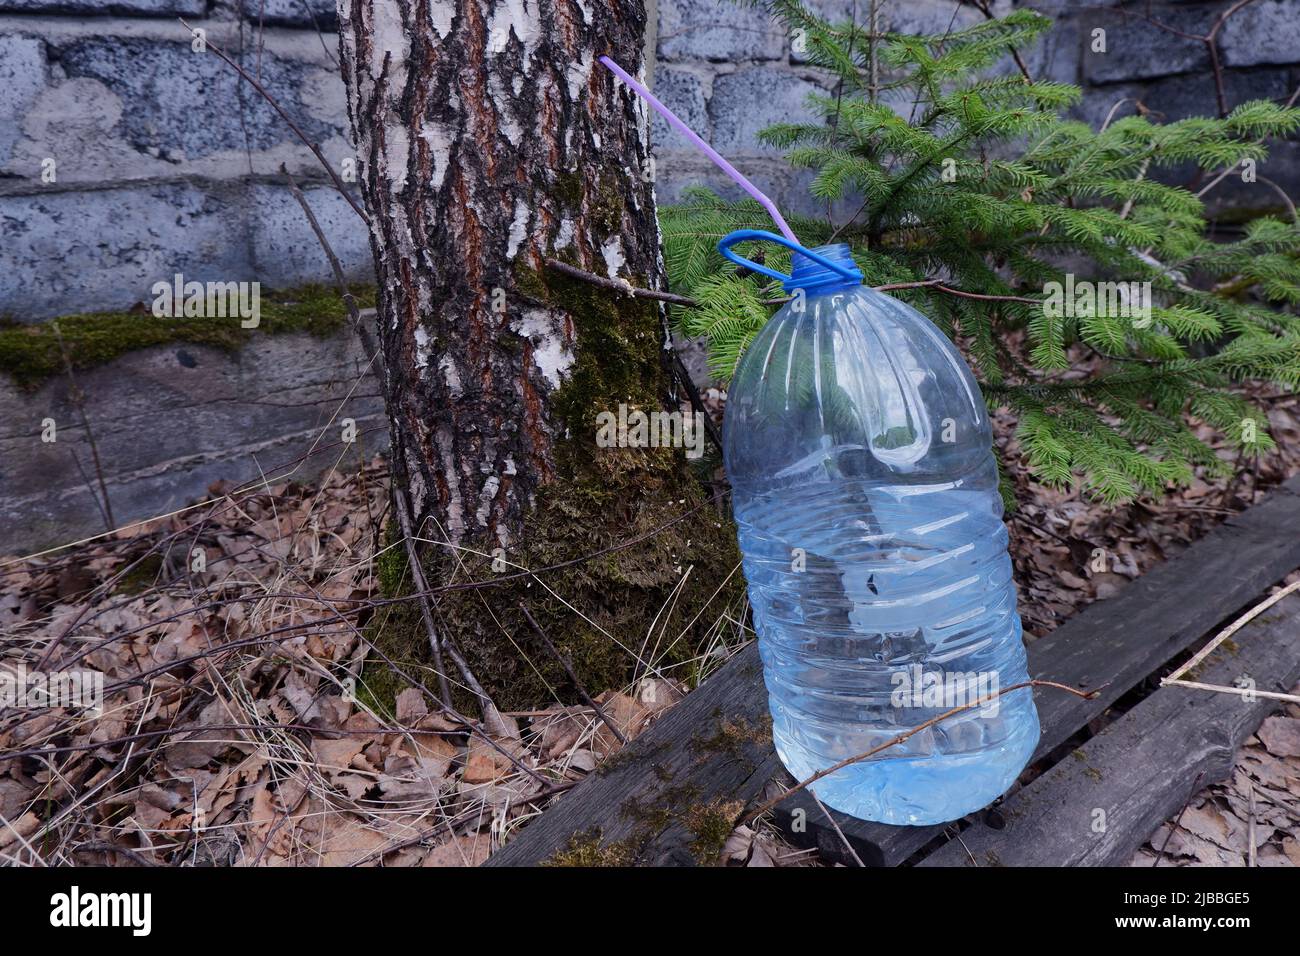 la savia de abedul se recoge del abedul a través de un tubo plástico de la botella, Foto de stock